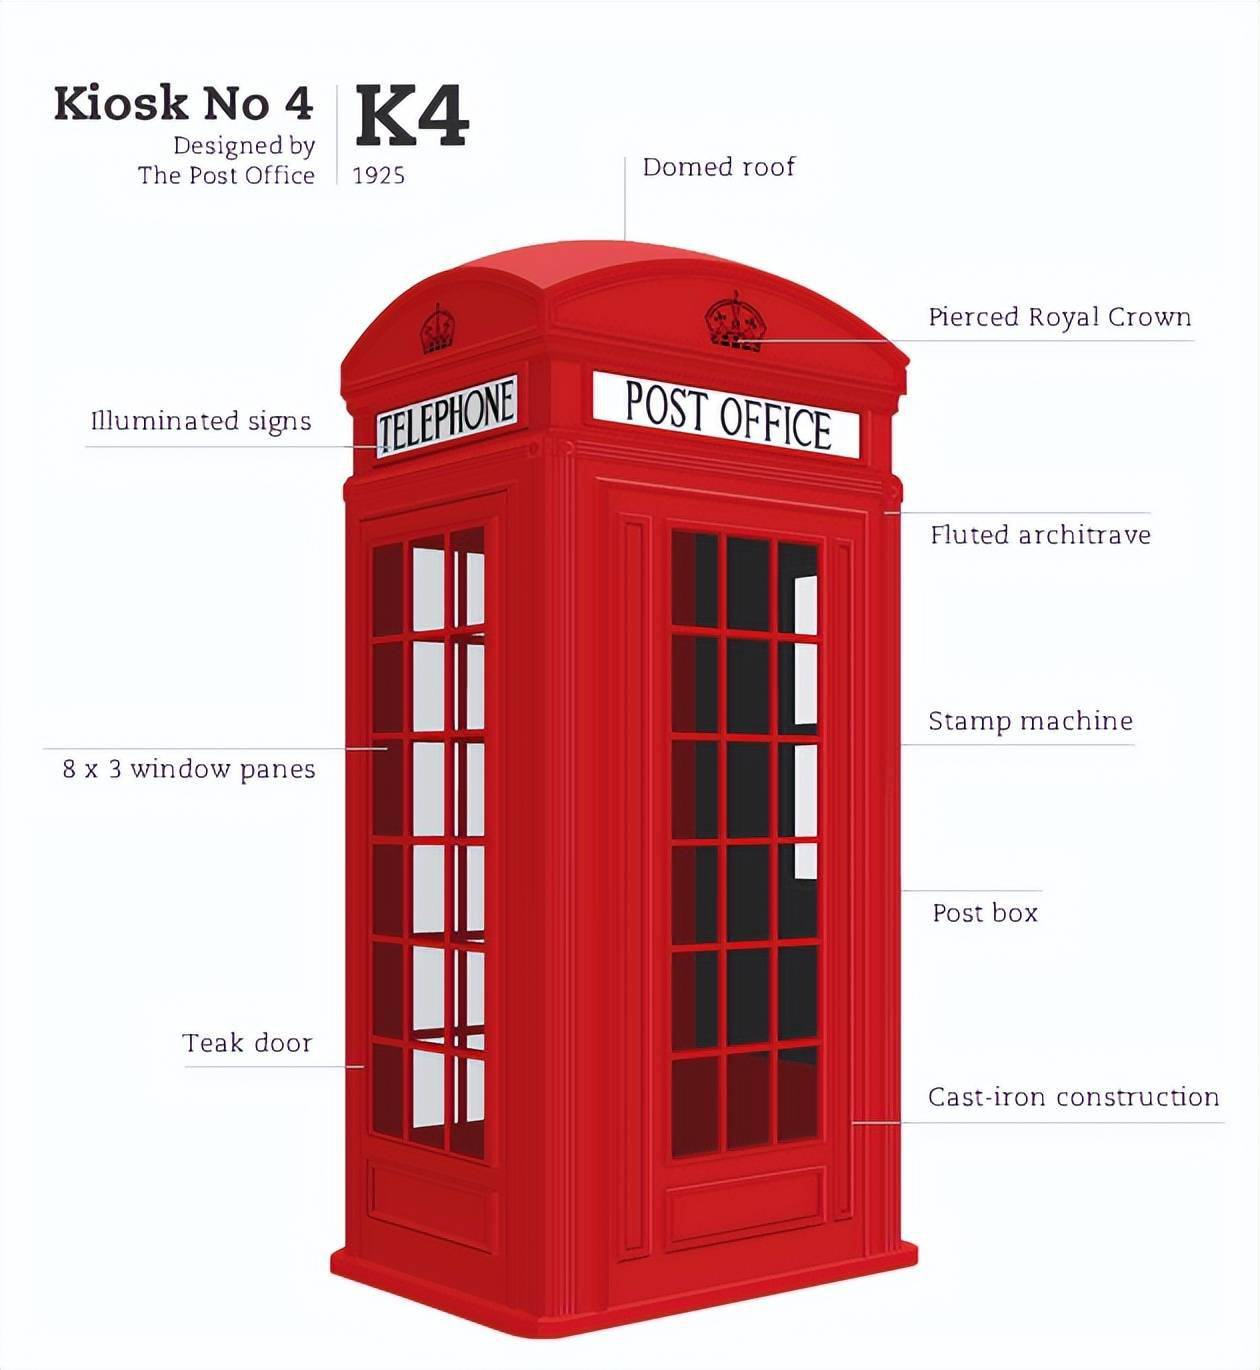 四个红色电话亭在伦敦 图库摄影片. 图片 包括有 布琼布拉, 文化, 电话, 都市, 城市, 欧洲, 街道 - 47530217